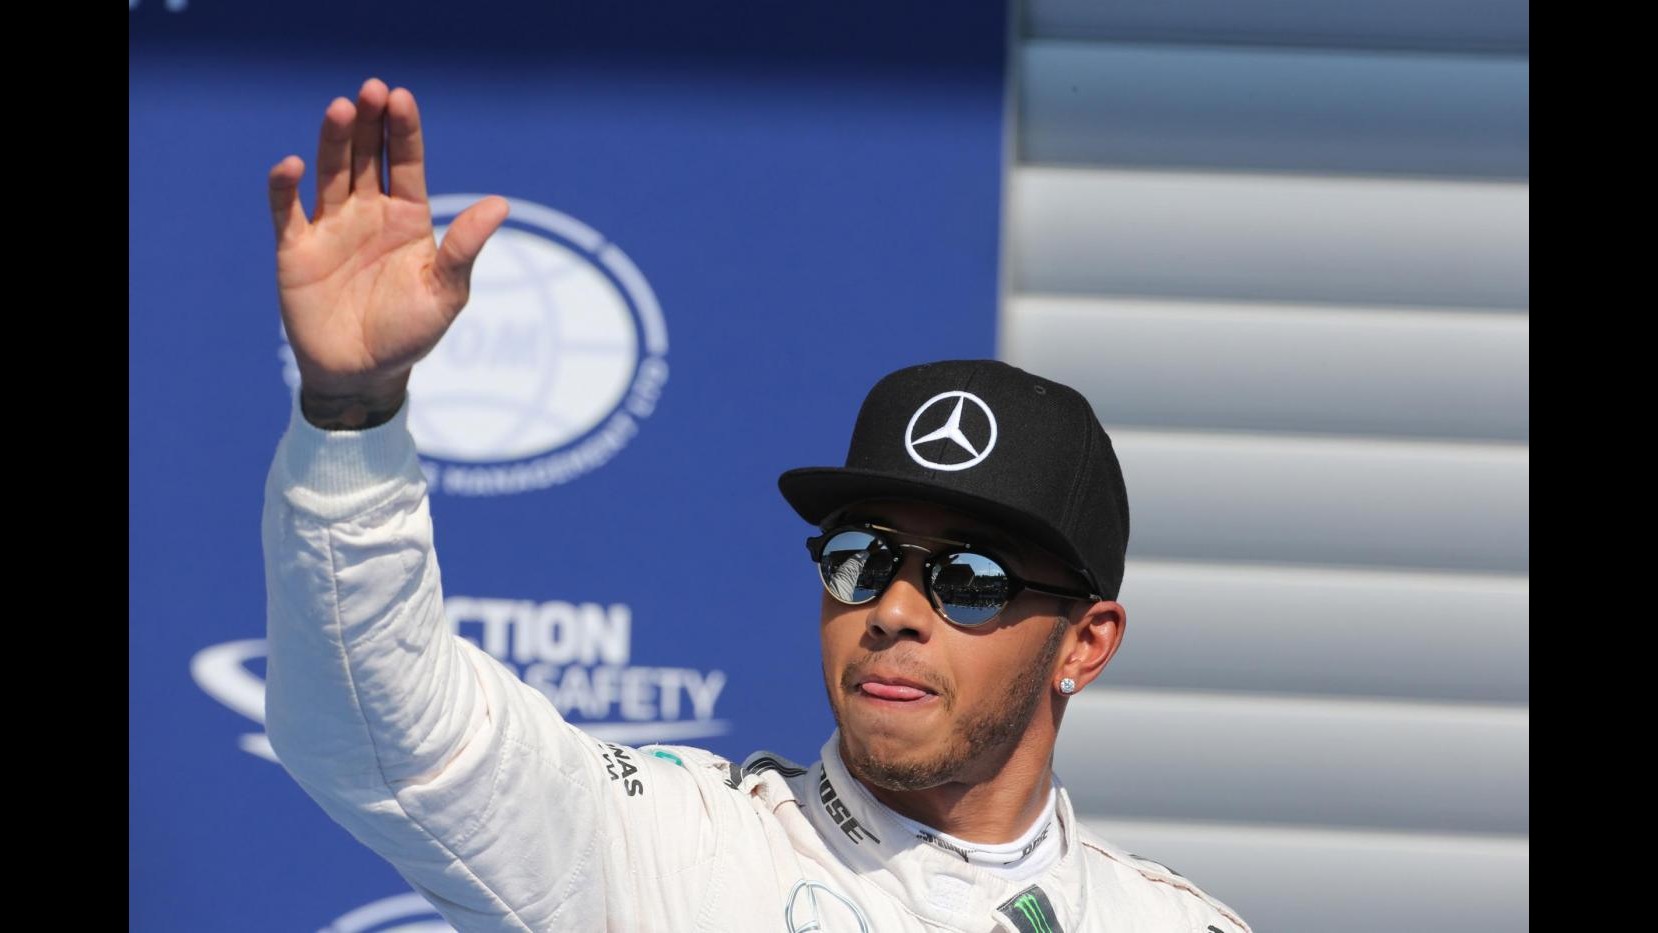 F1, Gp Belgio: trionfa Hamilton su Rosberg, delusione Vettel